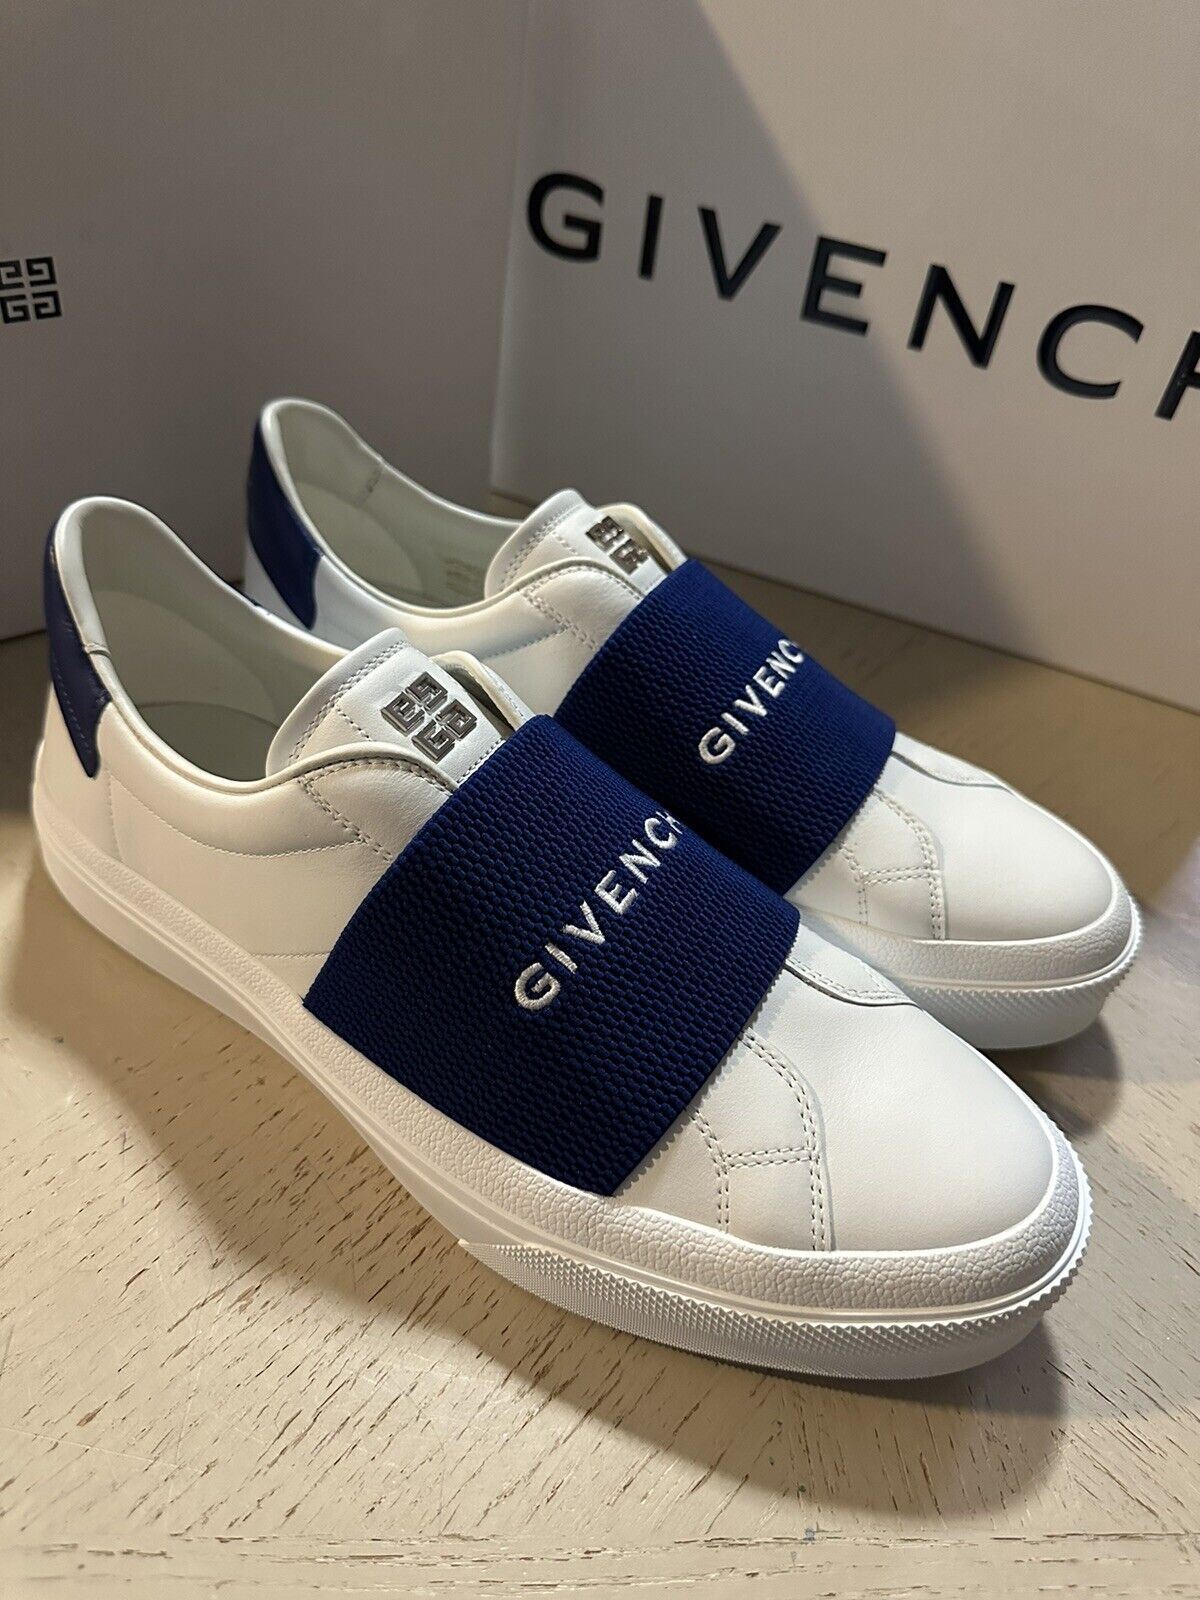 NIB Givenchy Мужские эластичные кожаные кроссовки City Sport белого/синего цвета 10 США/43 ЕС